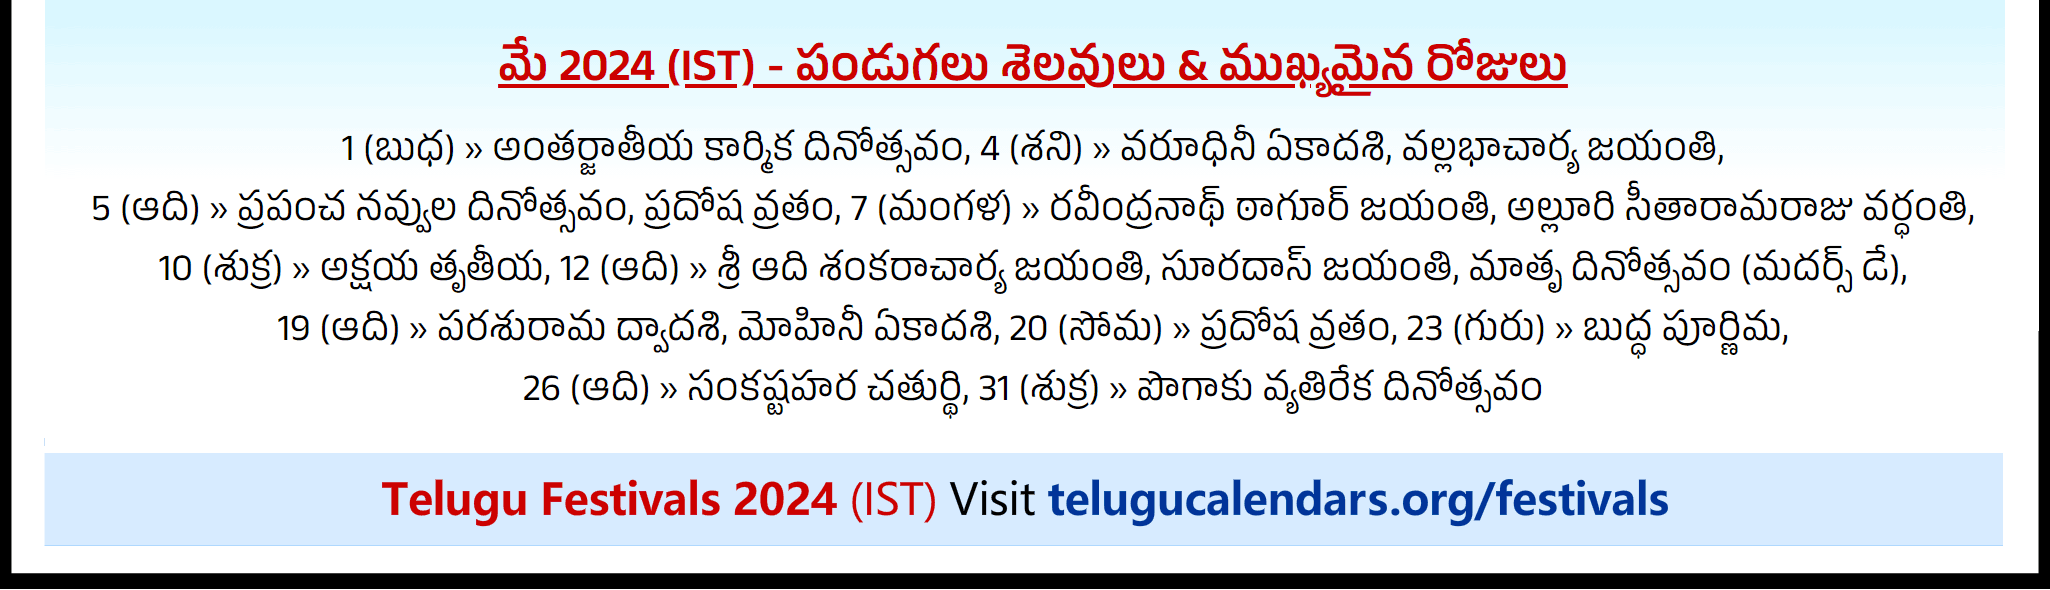 Telugu Festivals 2024 May Singapore